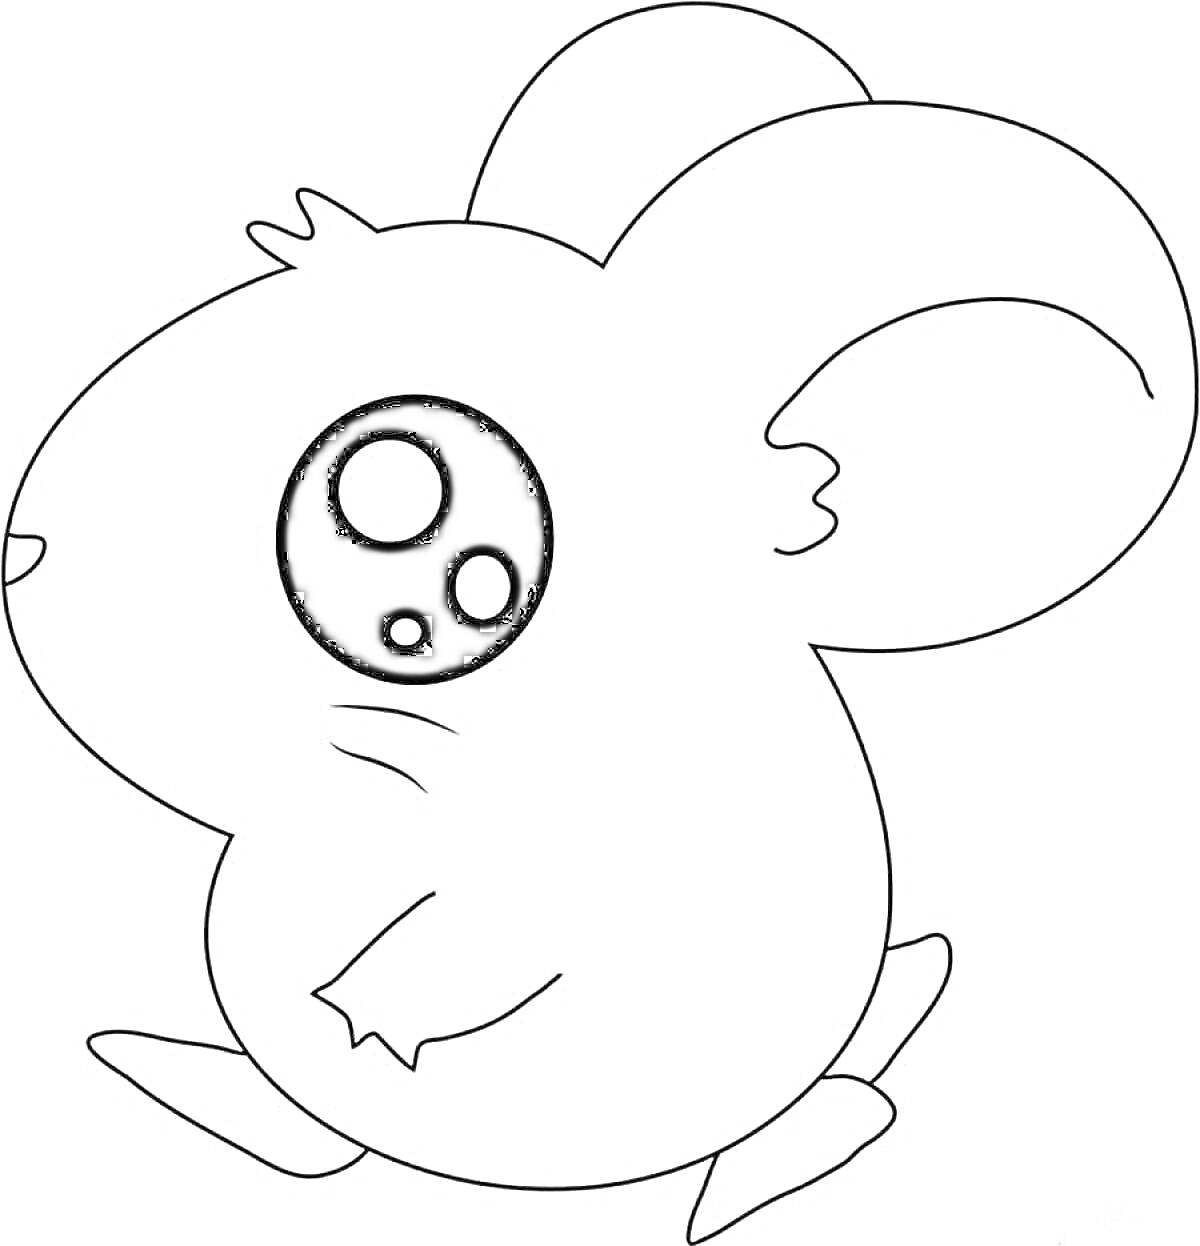 Раскраска Маленький милый мышонок с большими глазами и ушами